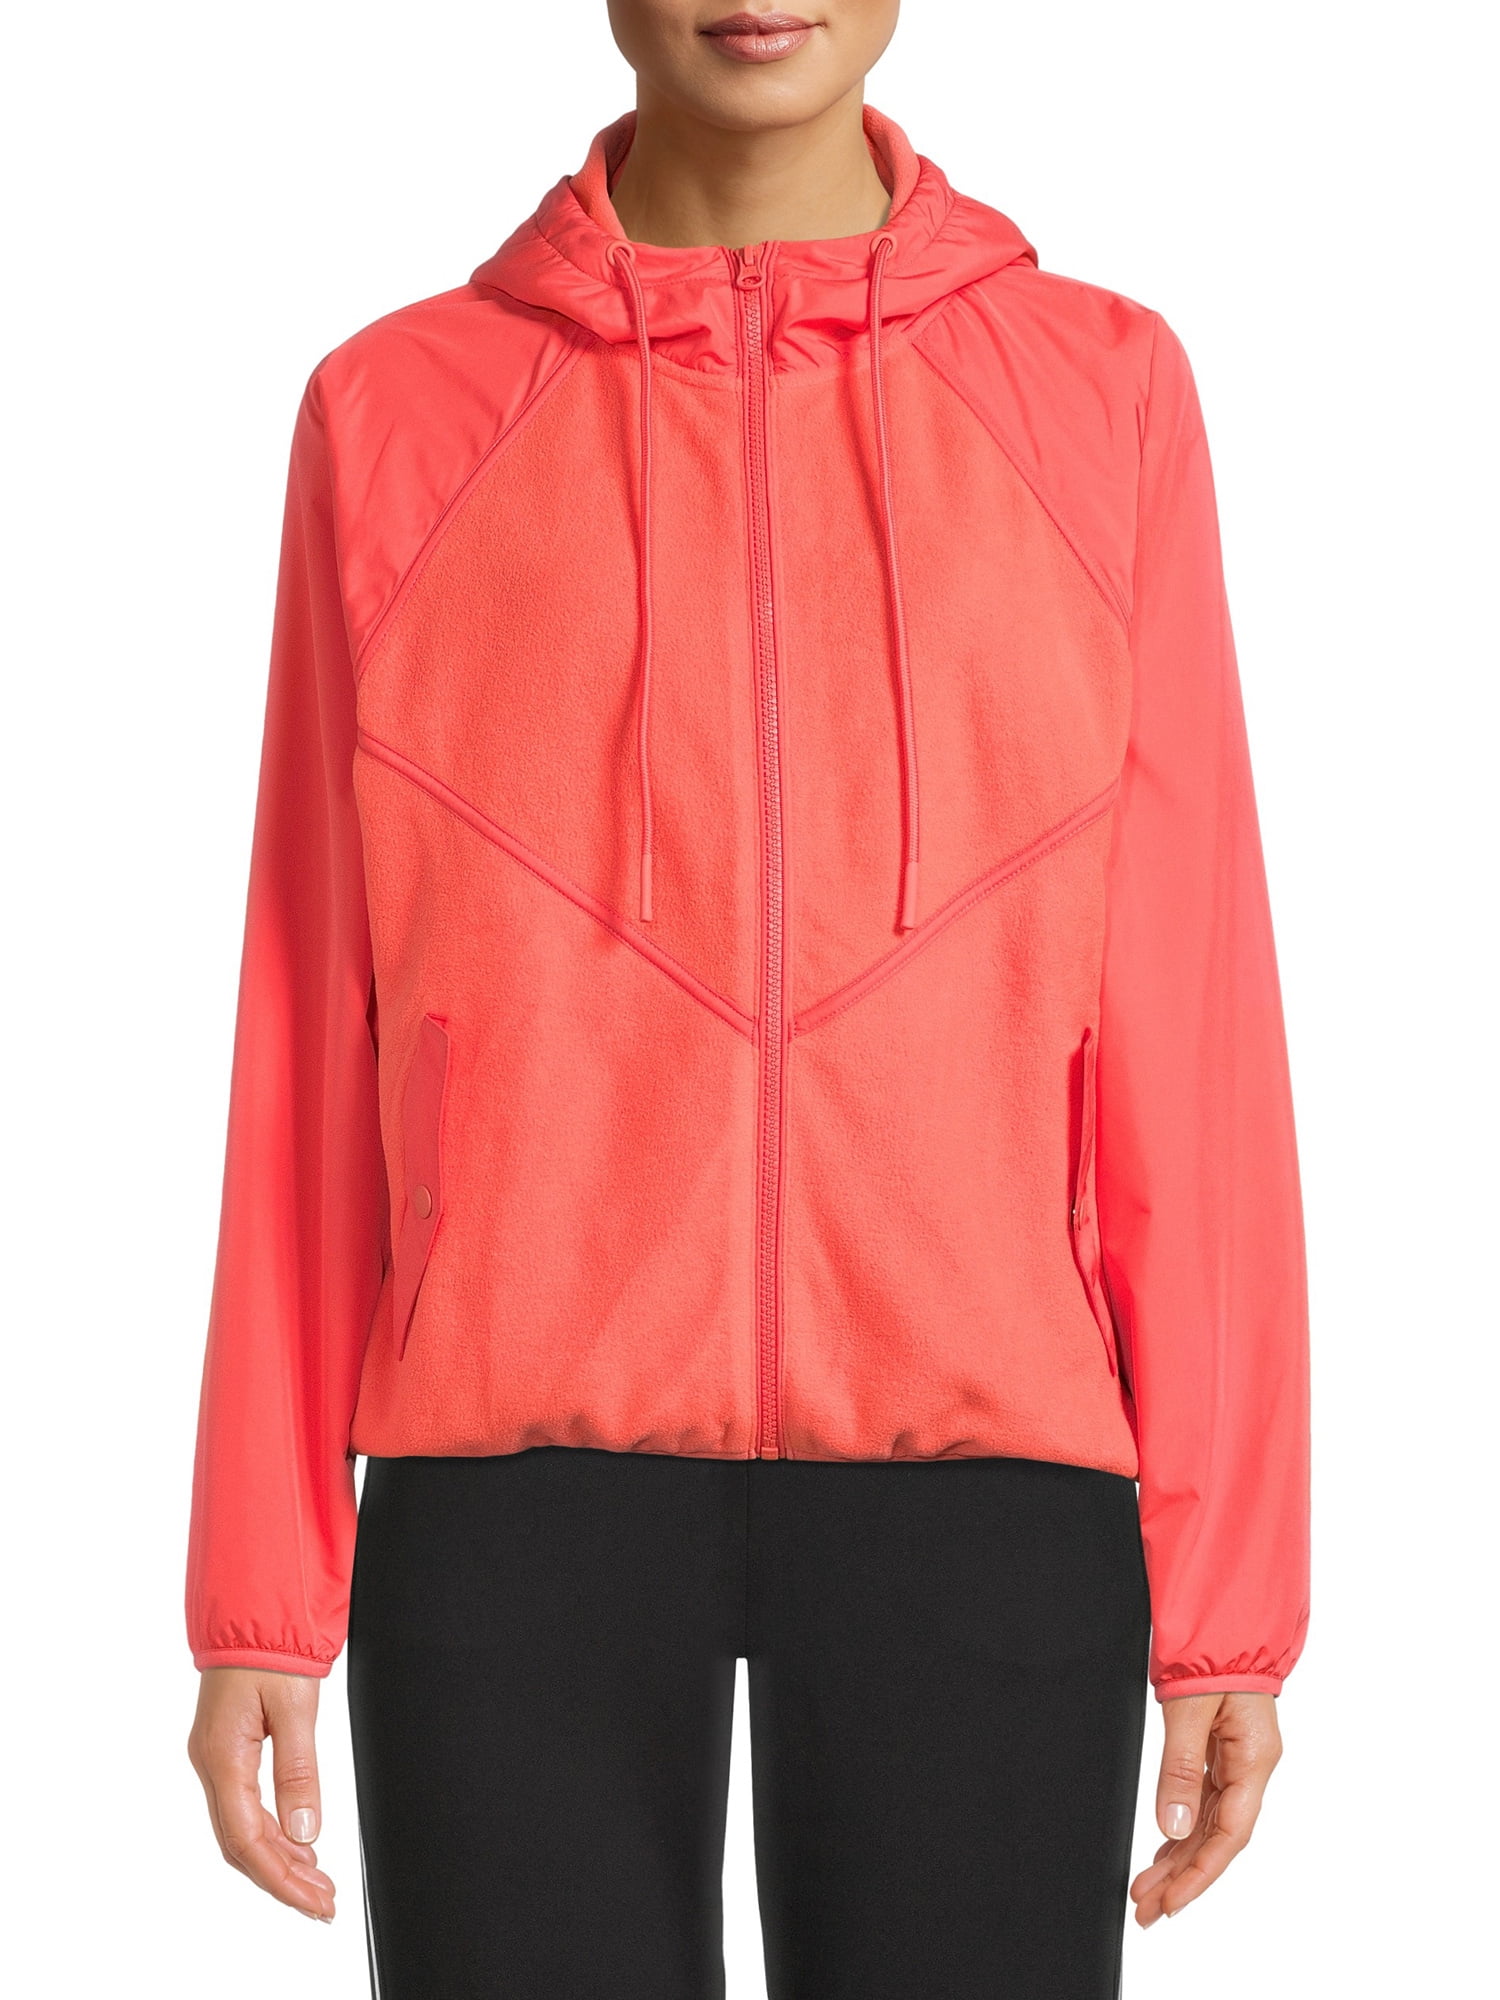 Avia Womens Short Sleeve Windbreaker Hoodie Vest Jacket or Top